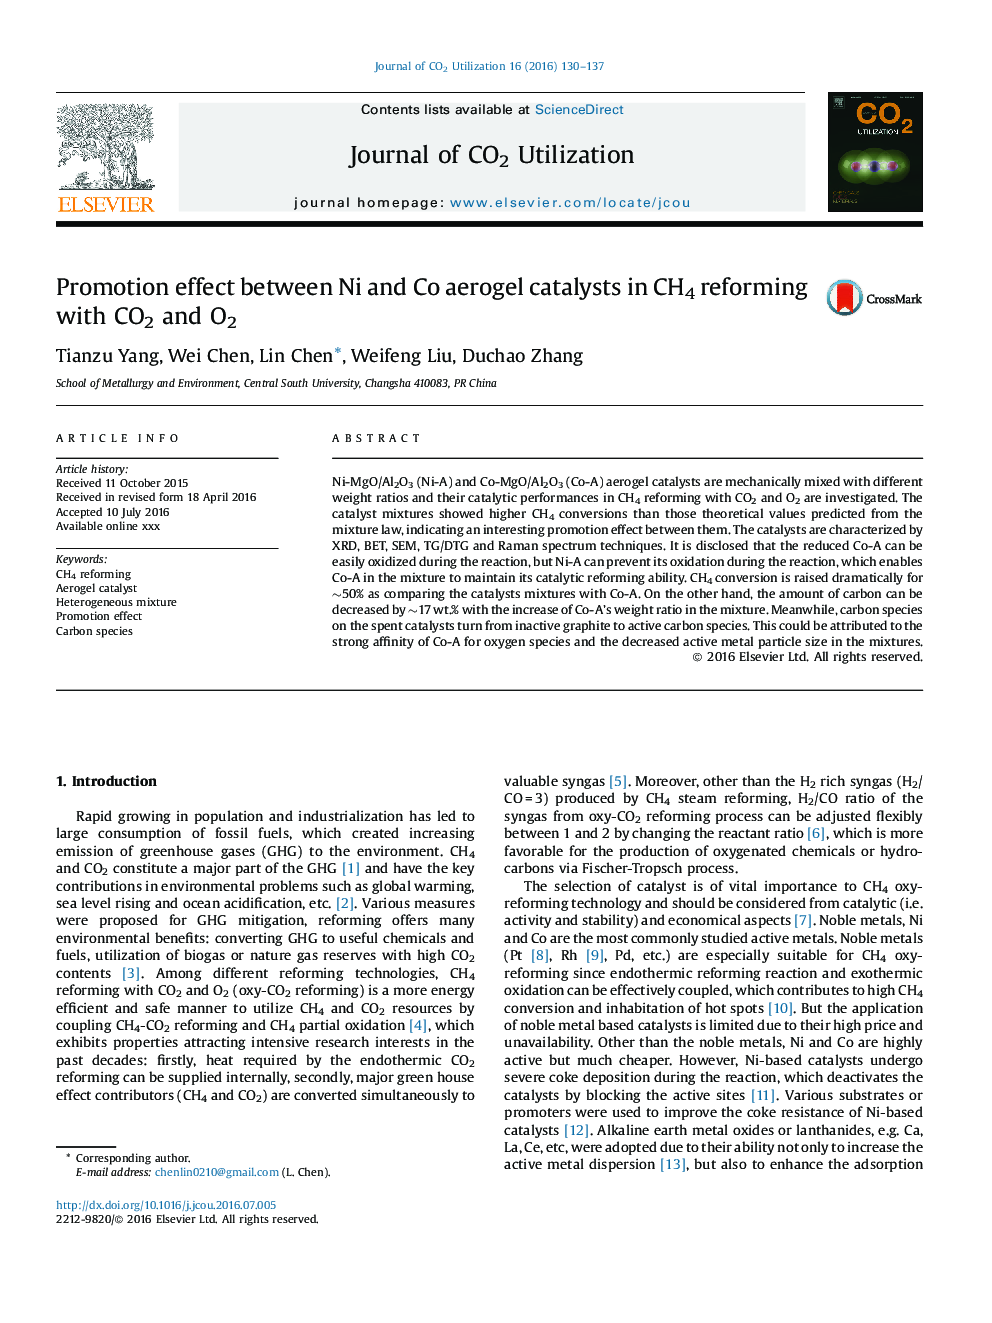 اثر توسعه بین کاتالیزور آئروژل Ni و Co در اصلاح CH4 با CO2 و O2